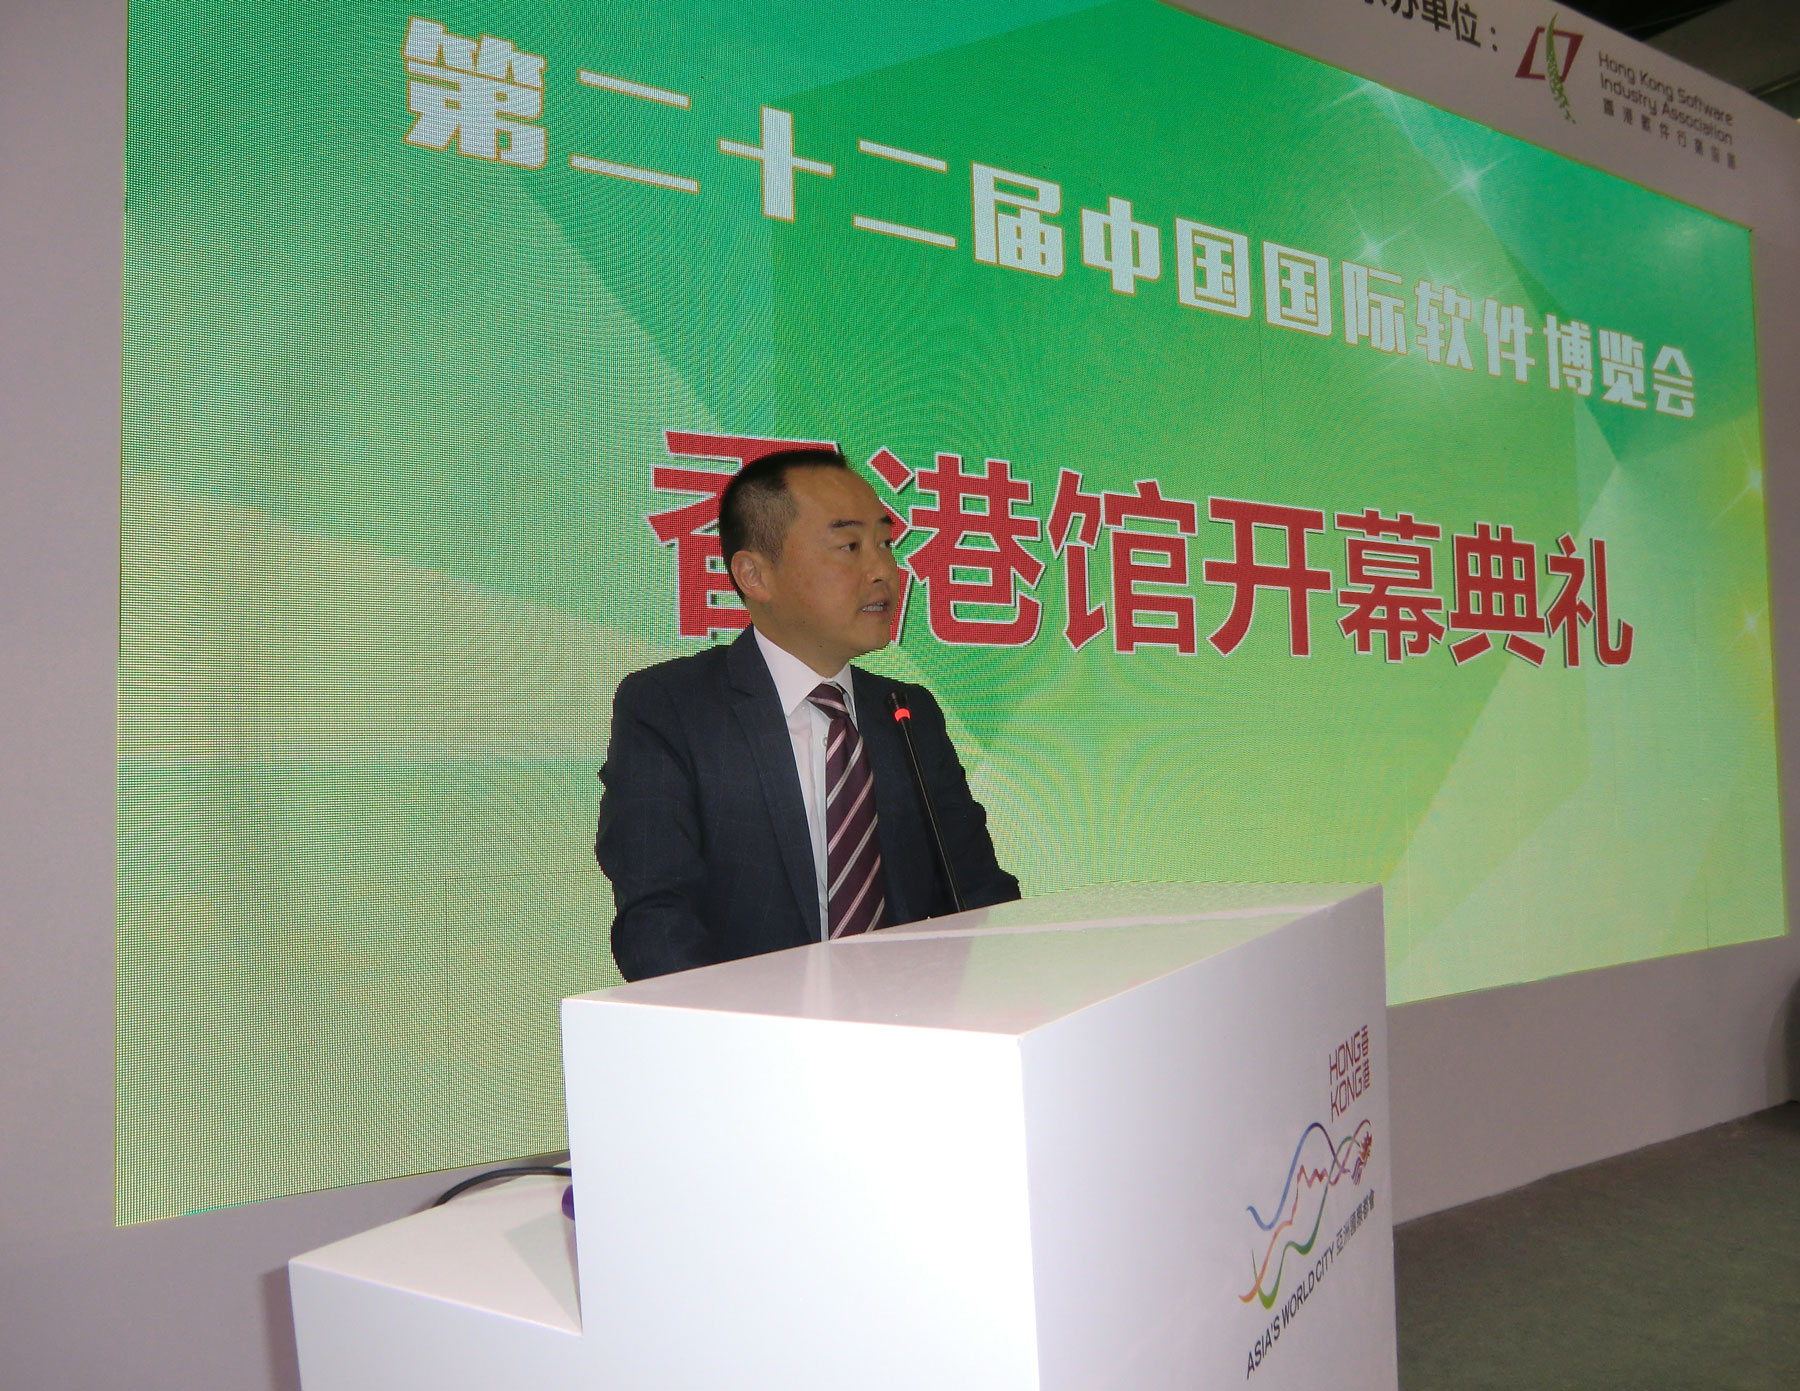 助理政府資訊科技總監(產業發展) 黃志光在第二十二屆中國國際軟件博覽會「香港館」開幕典禮上致辭